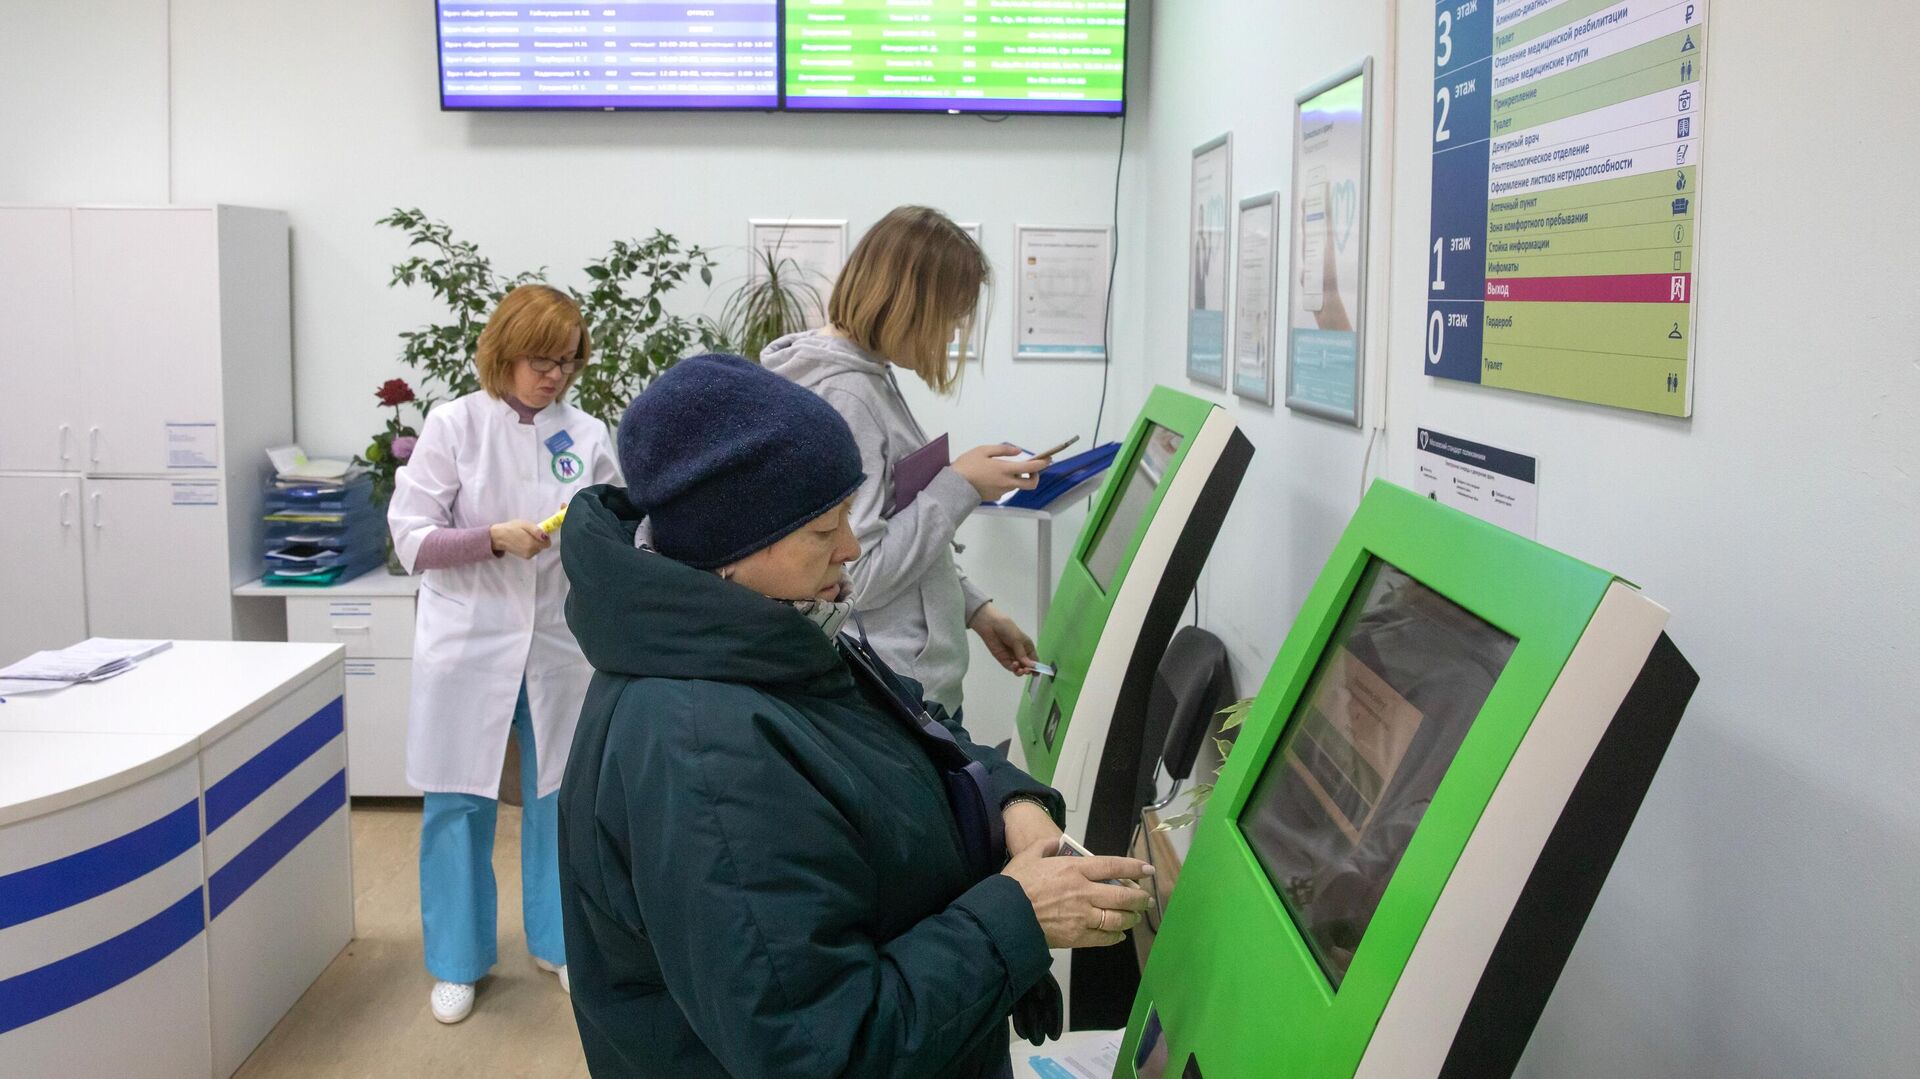  Пациенты записываются на прием к врачу через электронные терминалы в Москве   - РИА Новости, 1920, 26.01.2021